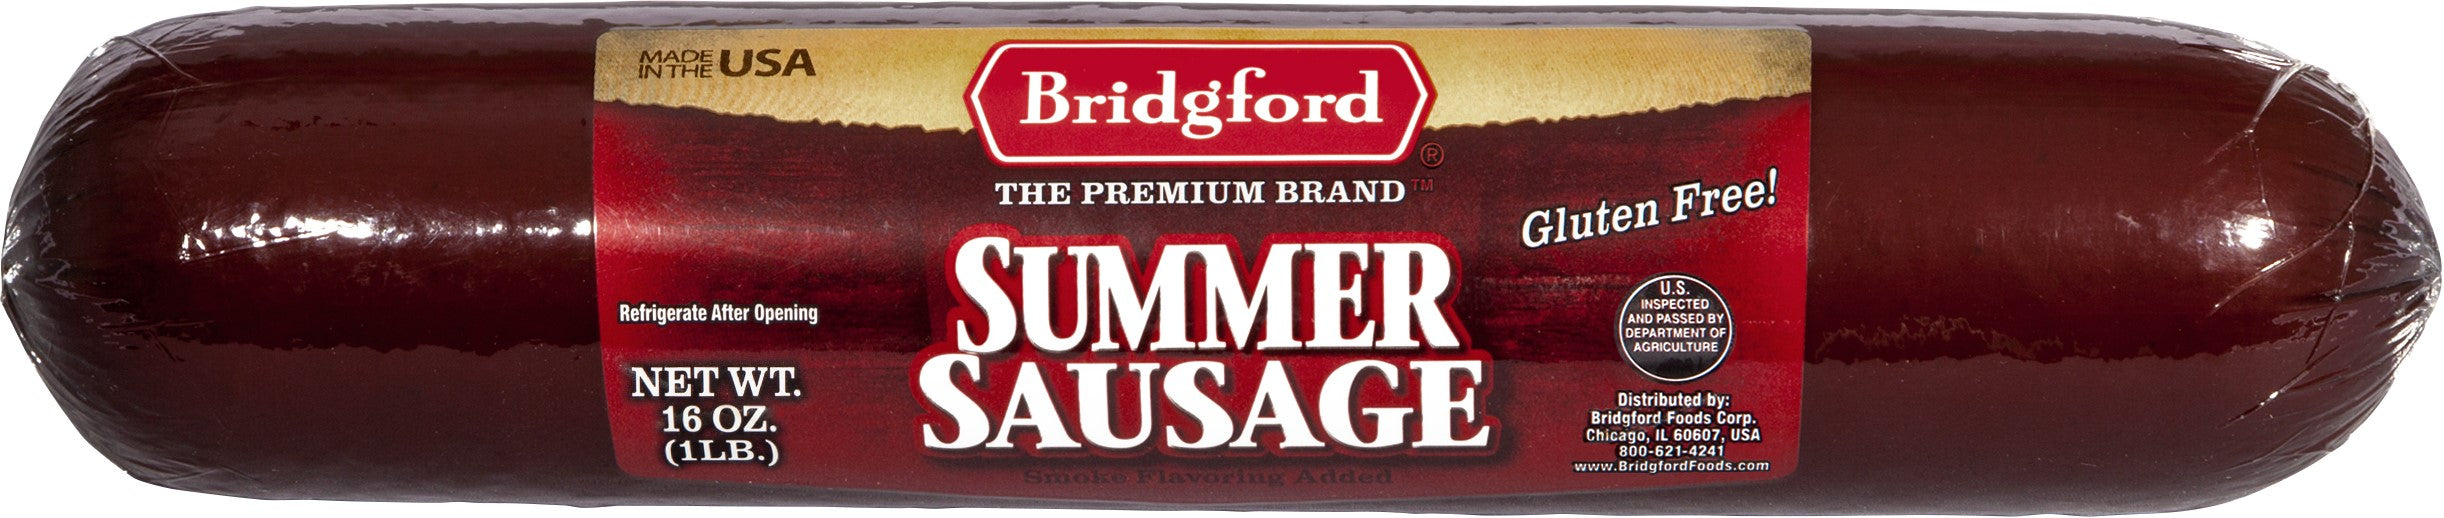 Bridgford Summer Sausage 16 oz